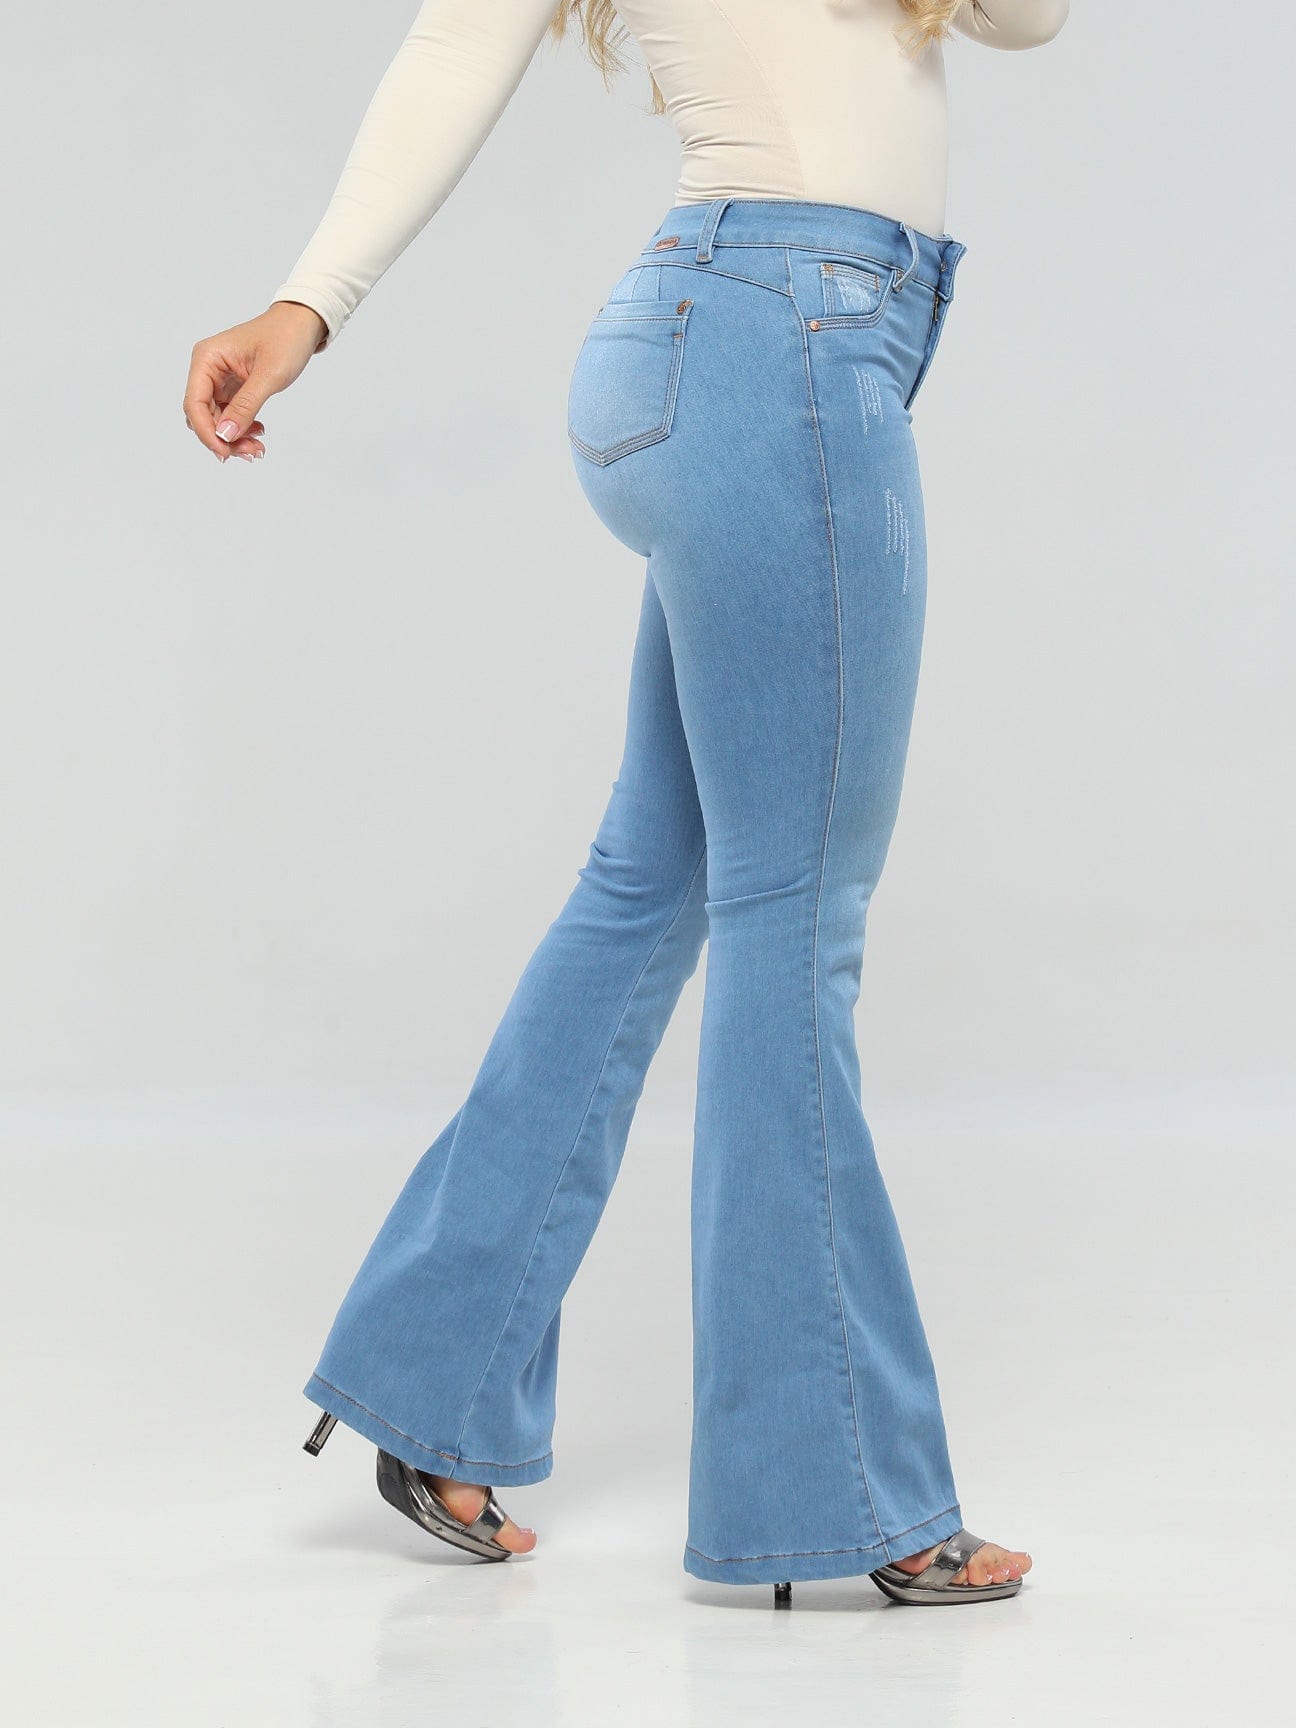 Jeans Colombiano Verox 6305 – Colombian Jeans & Fajas